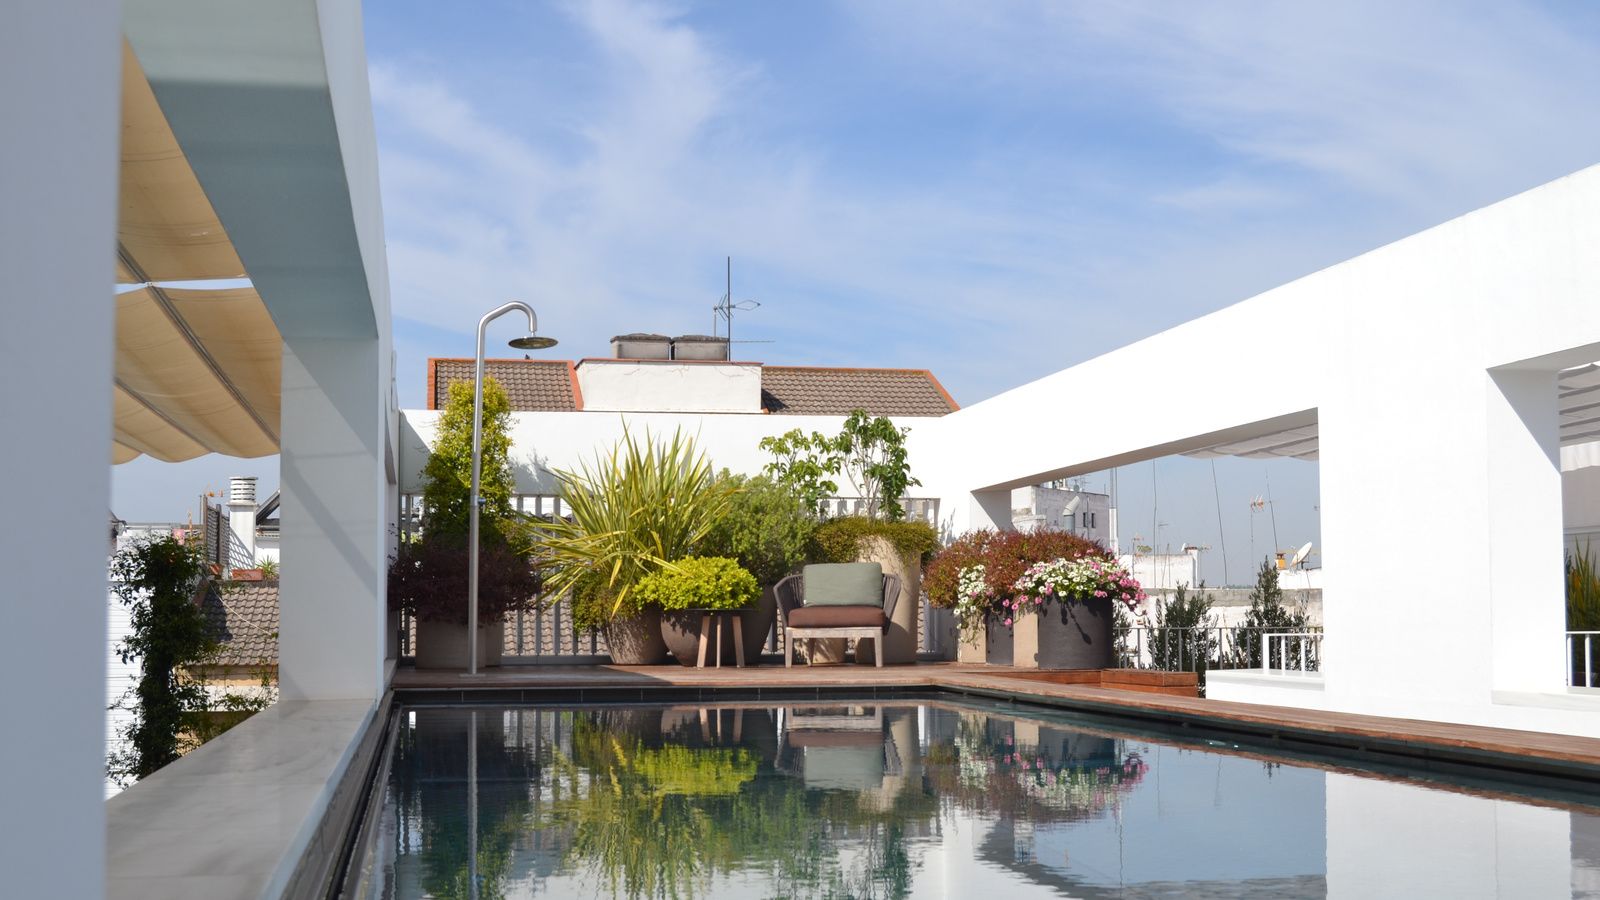 Hotel Mercer Sevilla terrasse et piscine donnant sur le quartier de L'Arenal